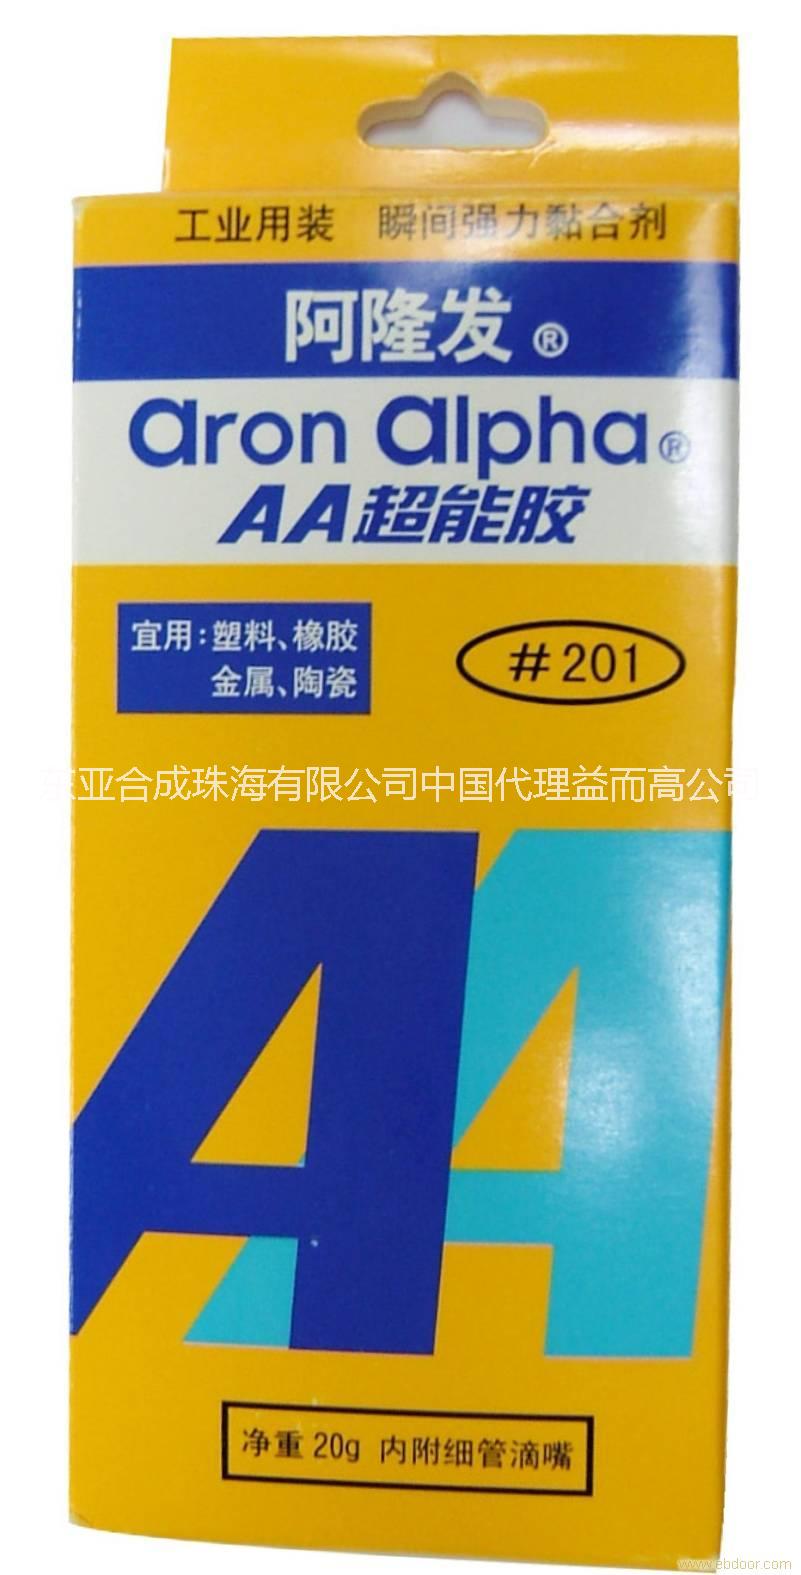 供应用于粘合固定的阿隆发AA超能胶